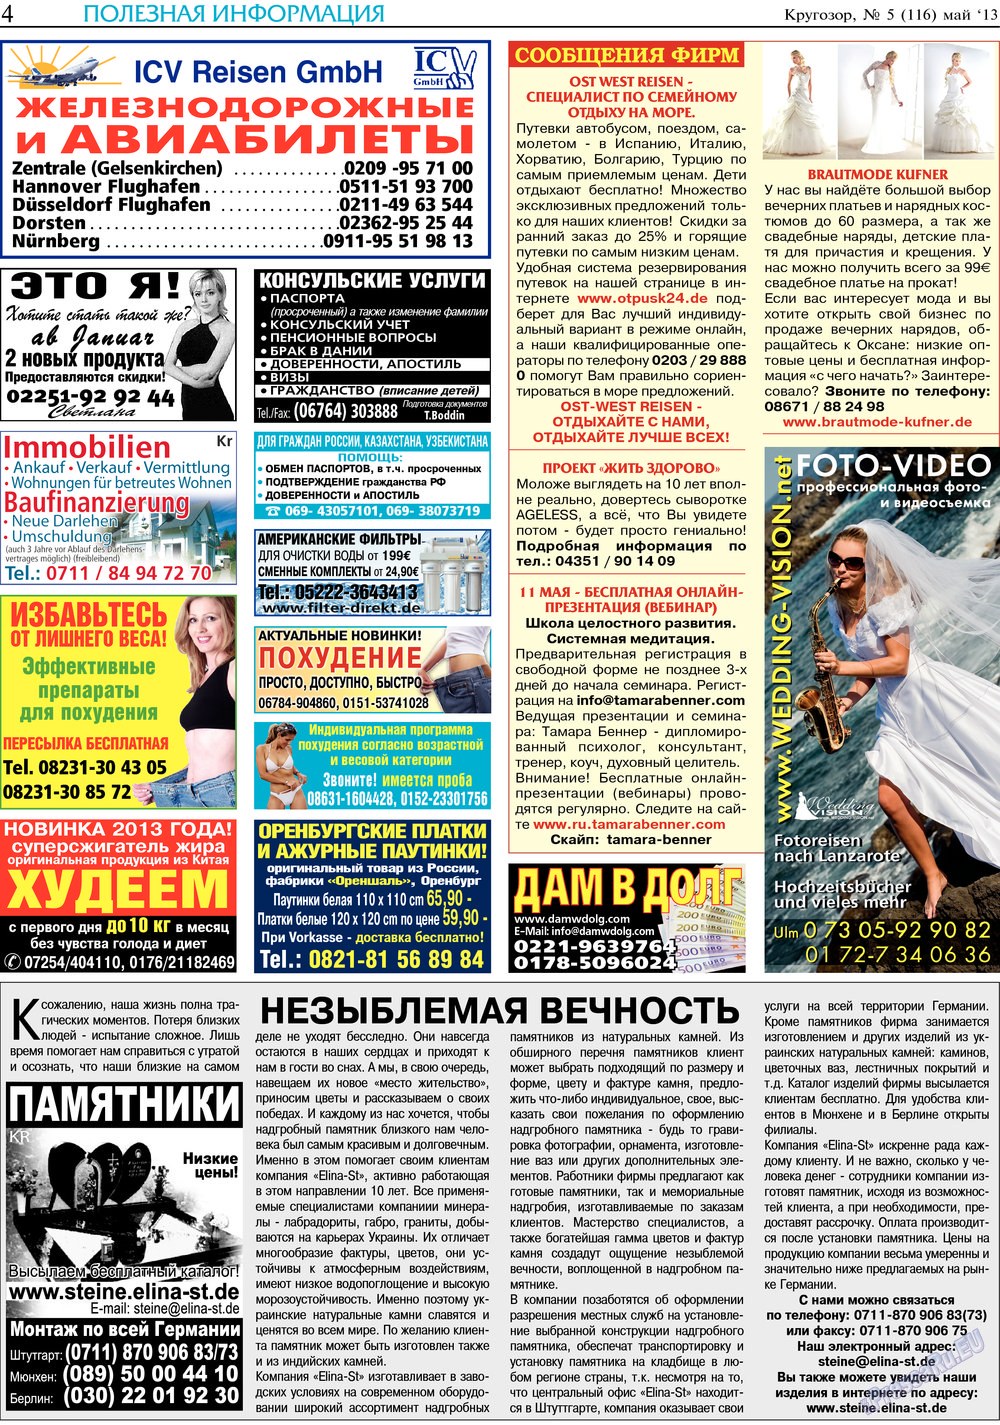 Кругозор, газета. 2013 №5 стр.4